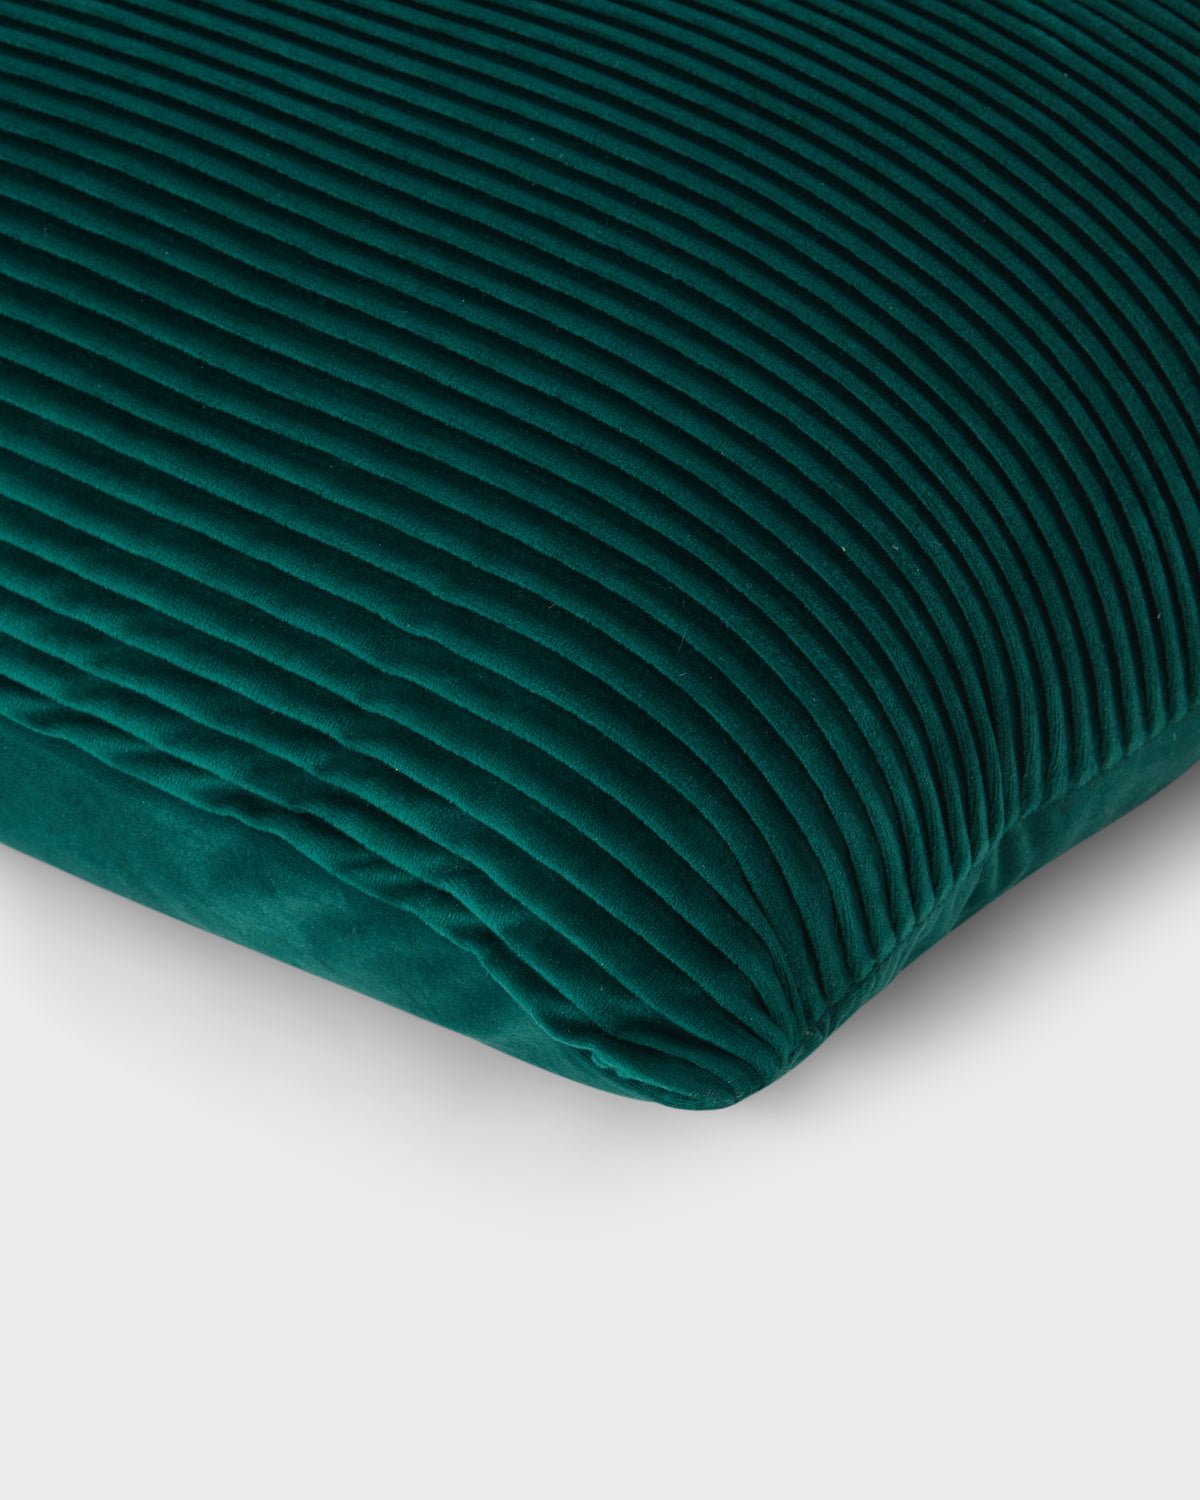 Cushion Cover - Green Ribbed Velvet 50x50 cm